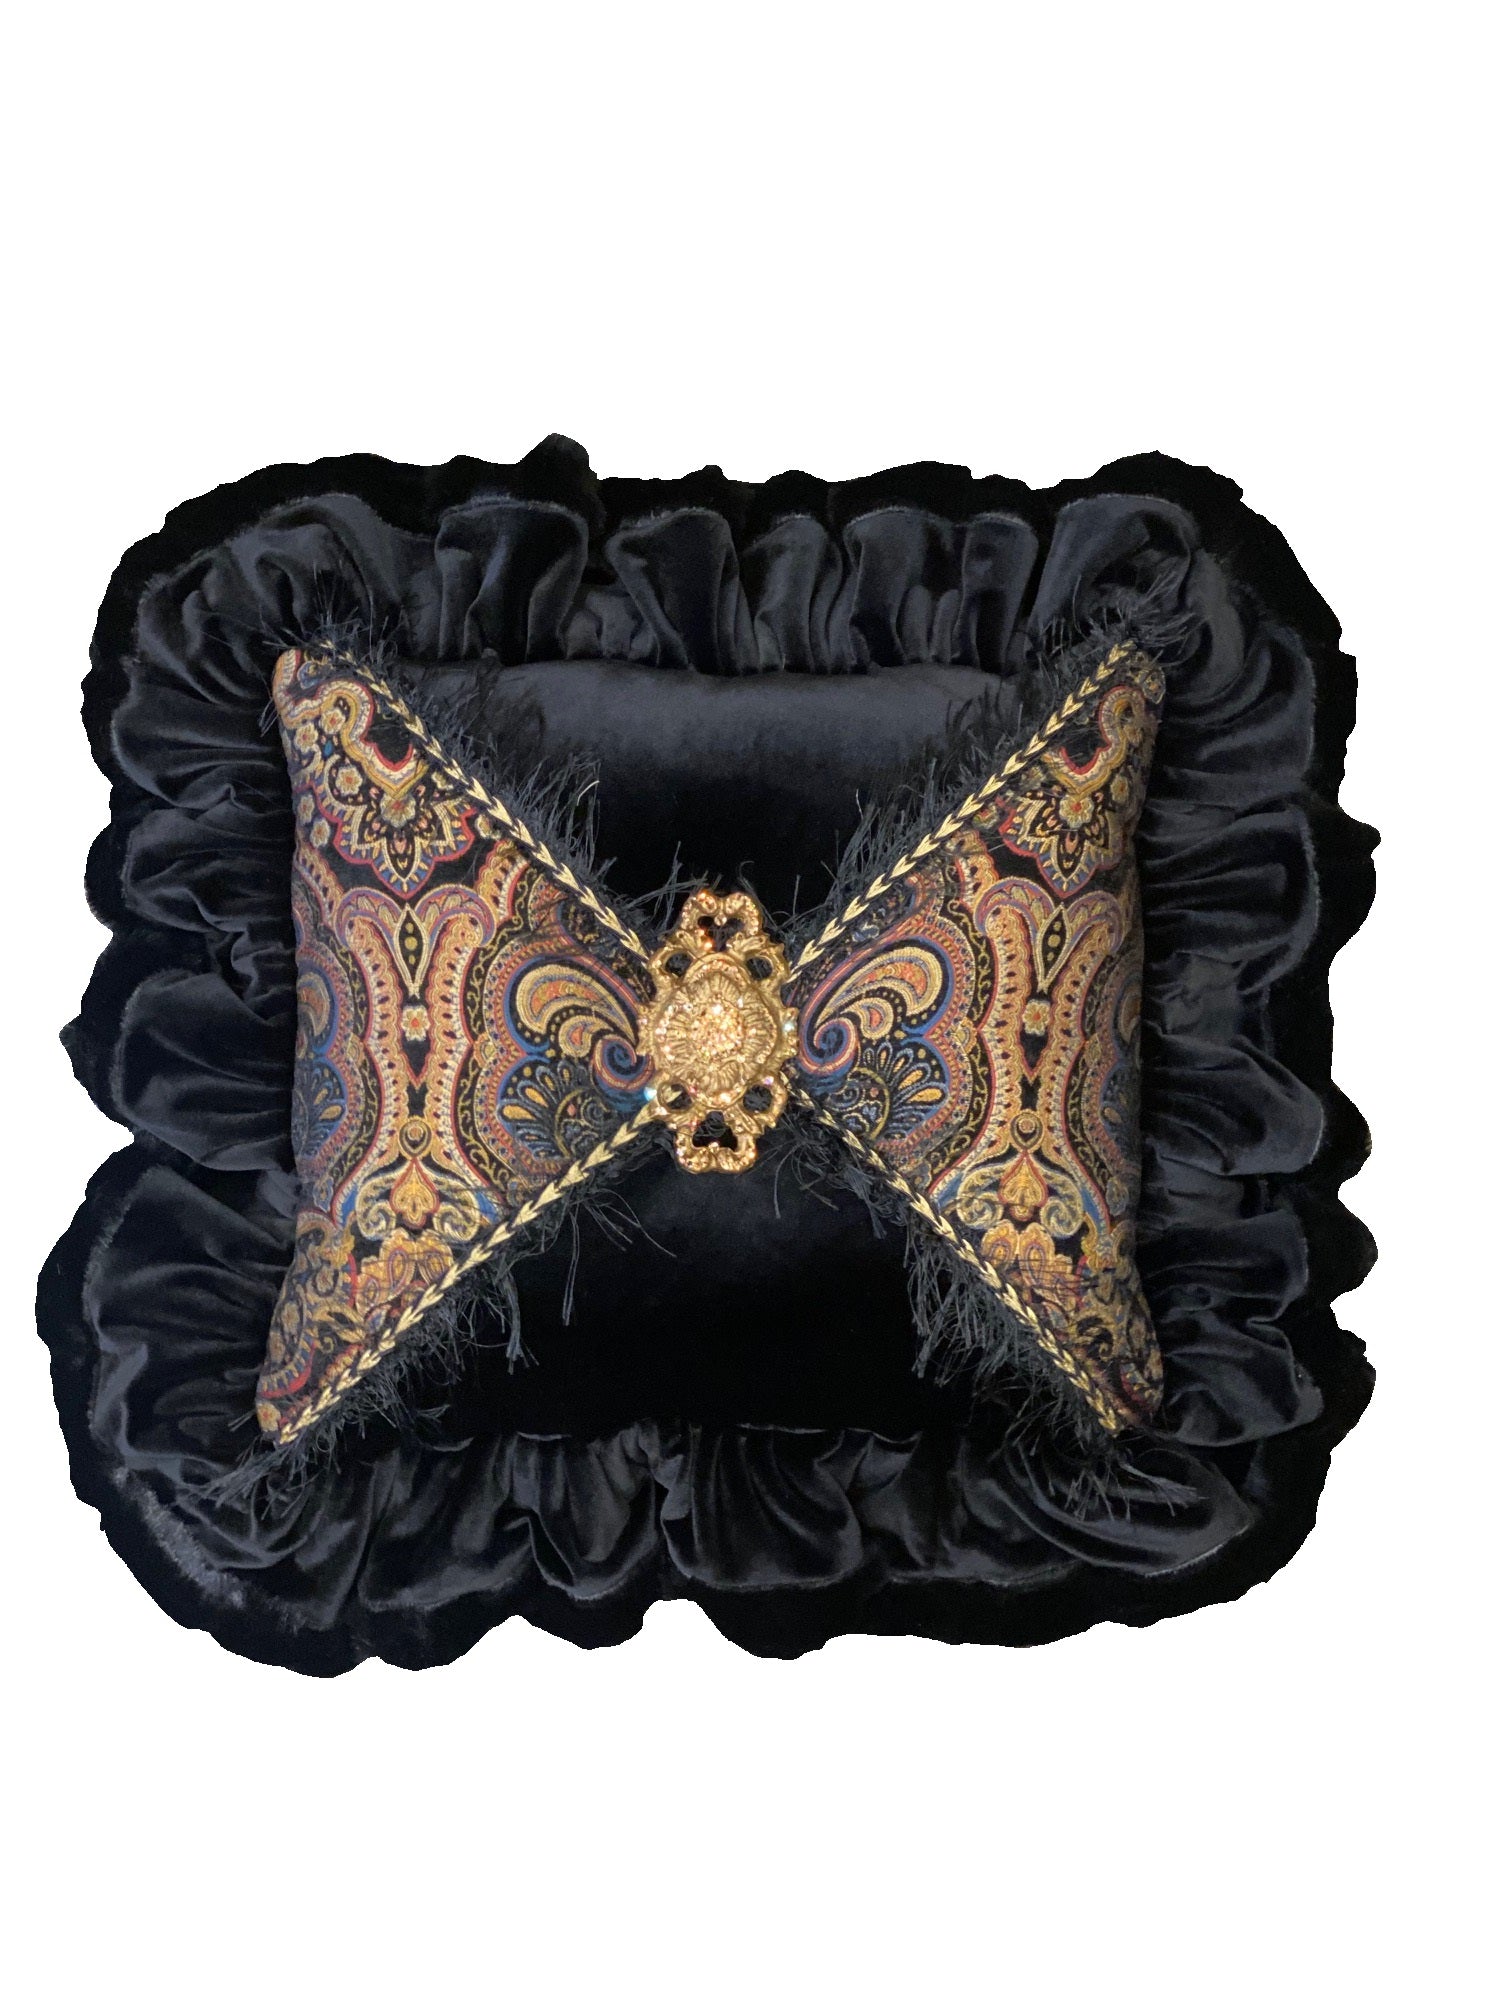 Sable Black Velvet Ruffled Pillow with Jeweled Medallion